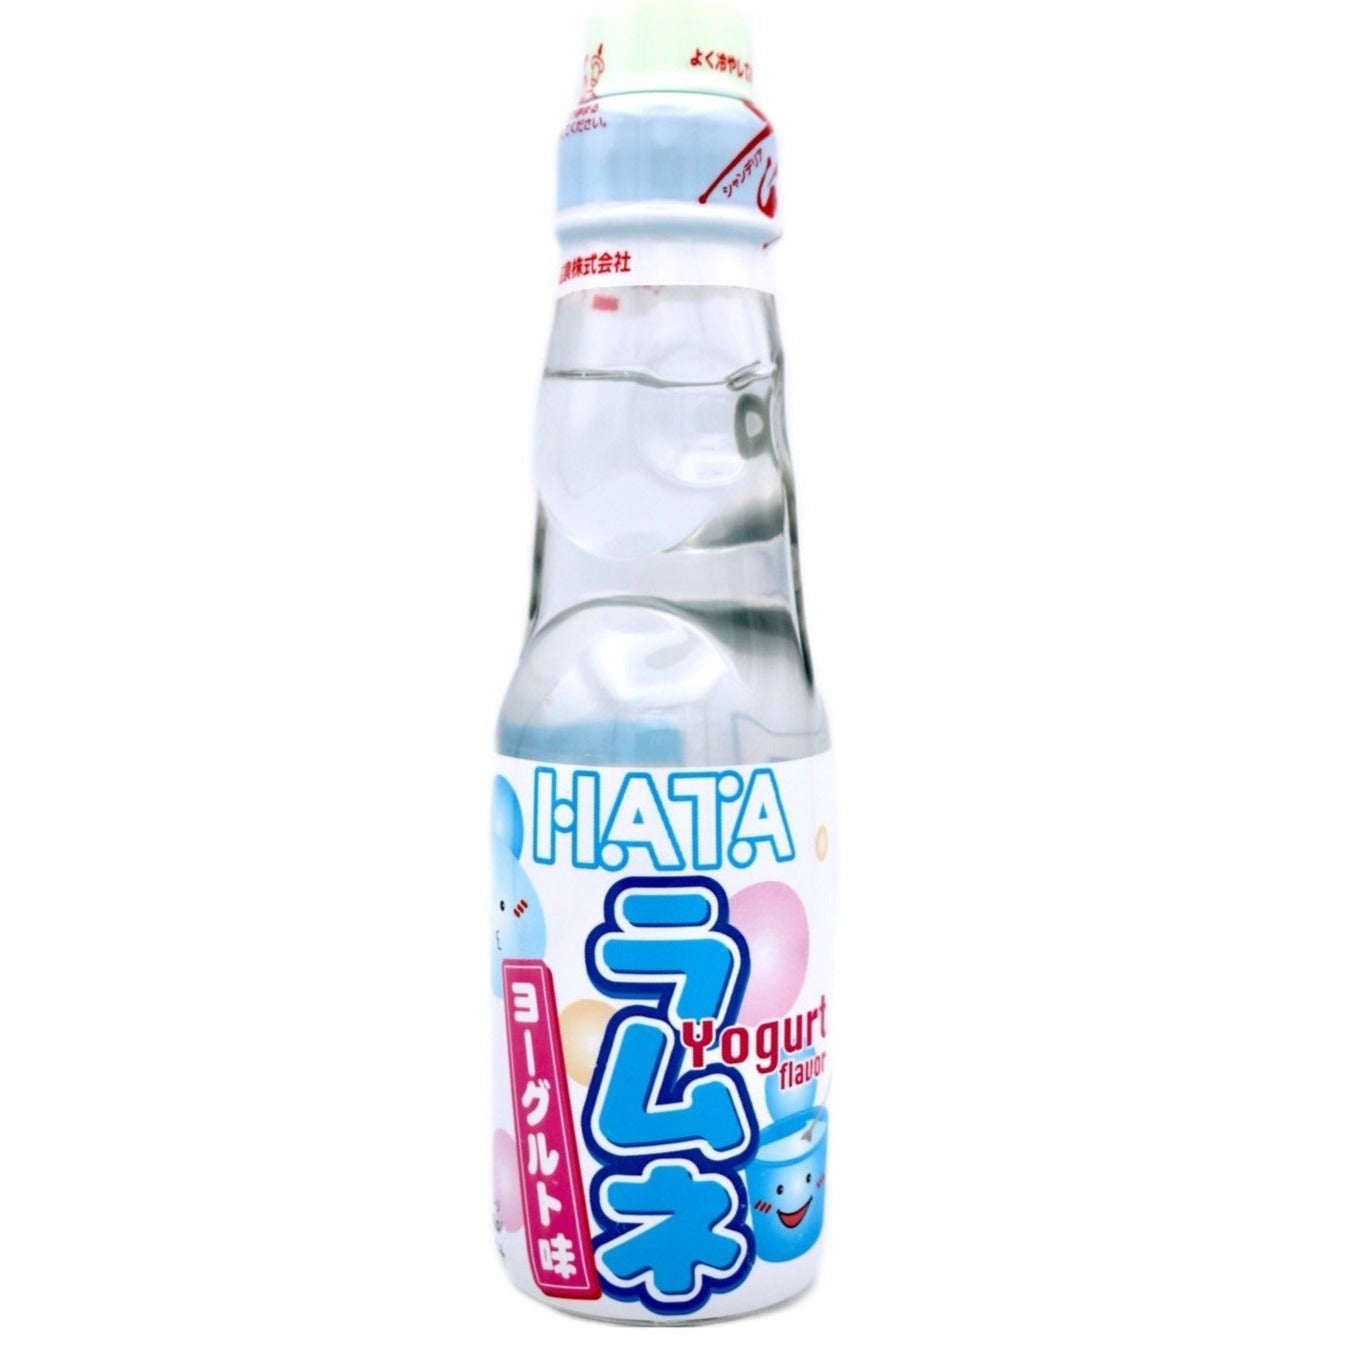 Hatakousen Yoghurt Ramune Soda